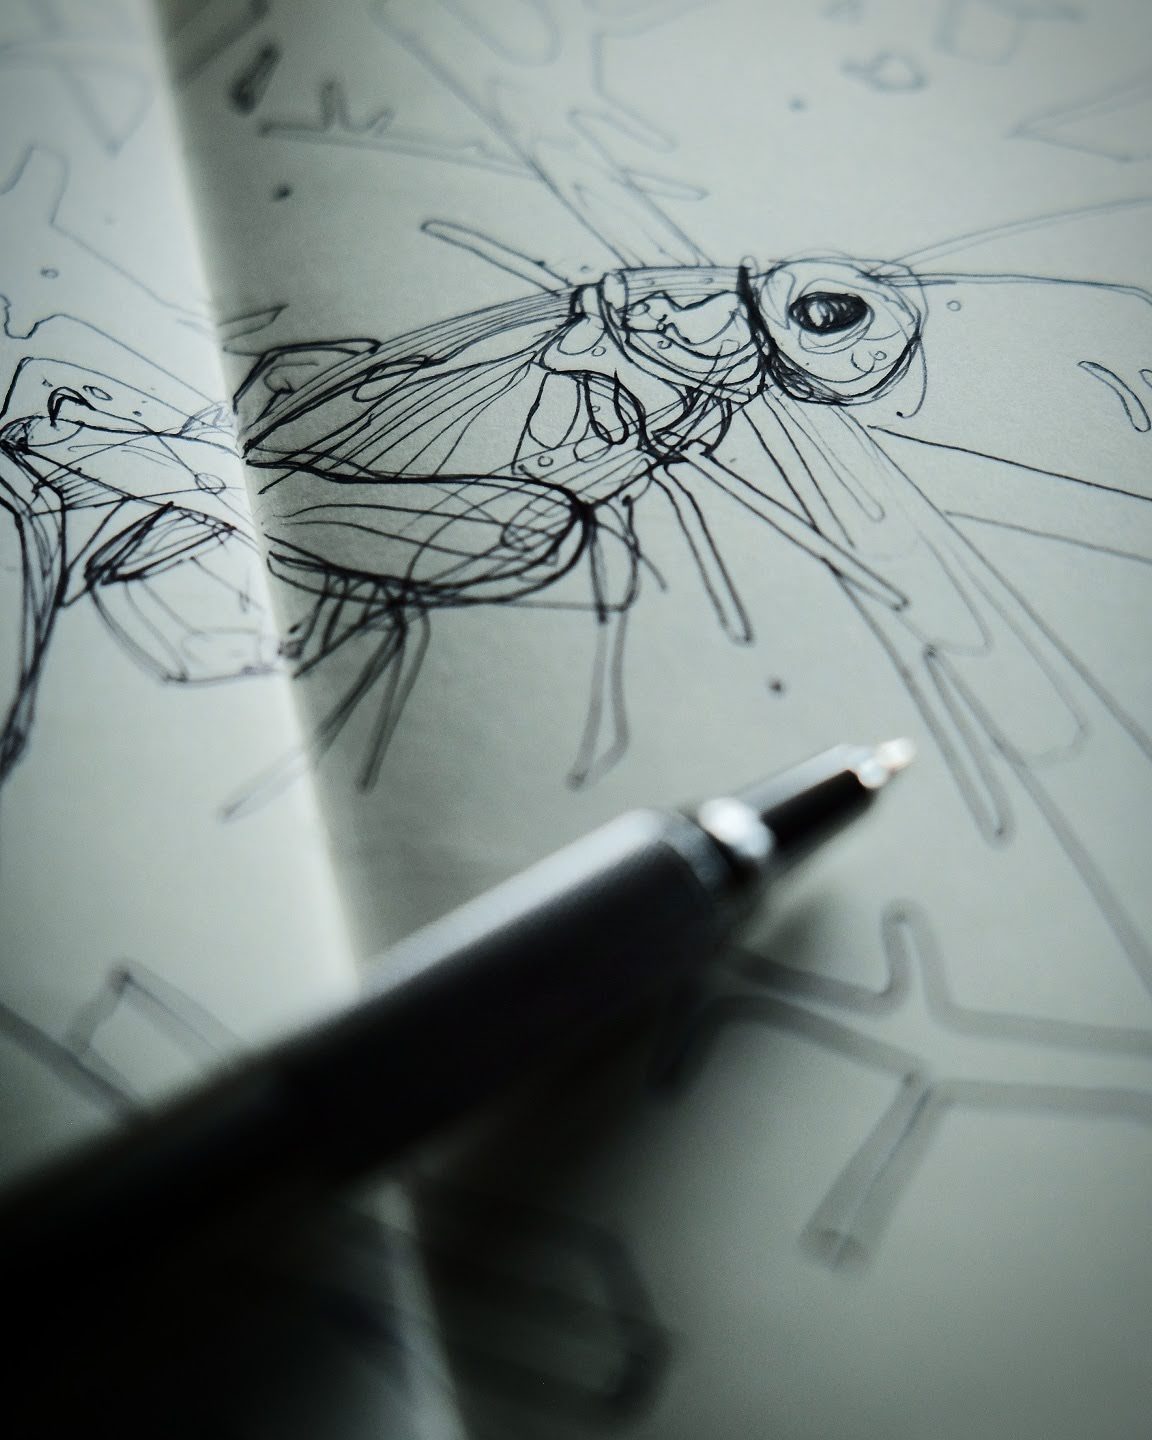 Grasshopper pen sketch by wildlife artist Chris Wilson